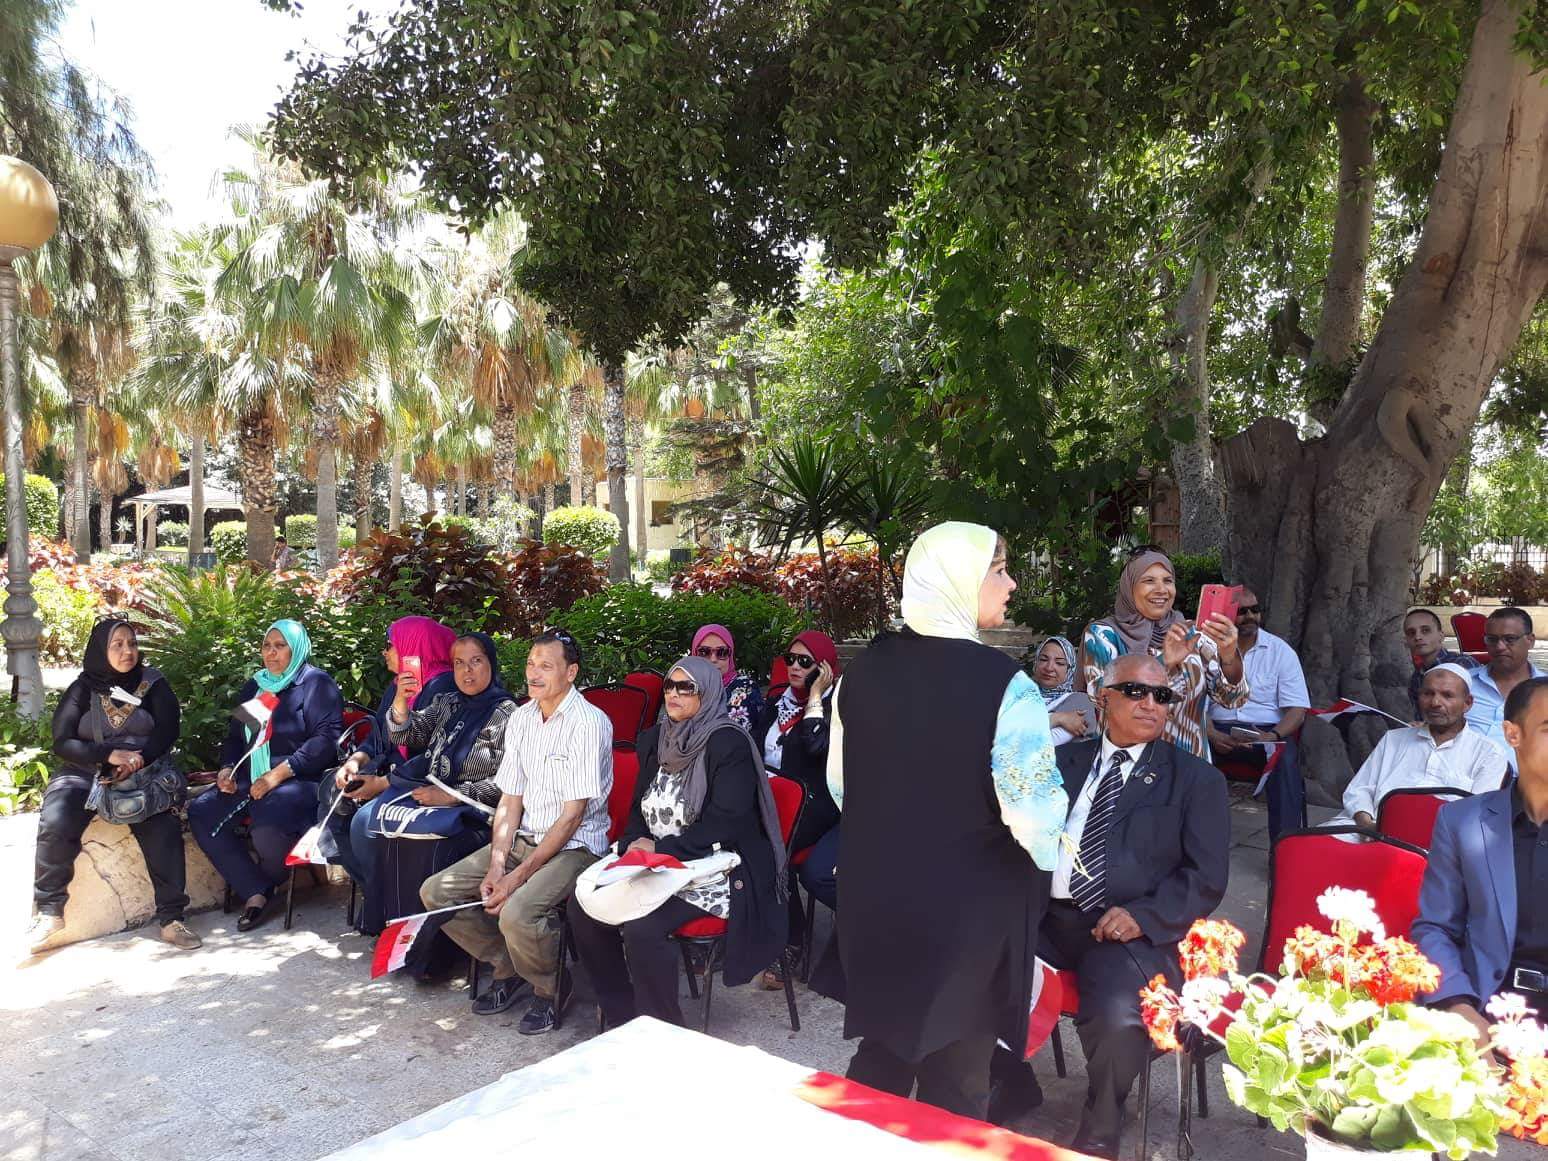 عروض للتنورة والمزمار البلدى باحتفالات 30 يونيو بحديقة الطفل بالاسكندرية  (4)